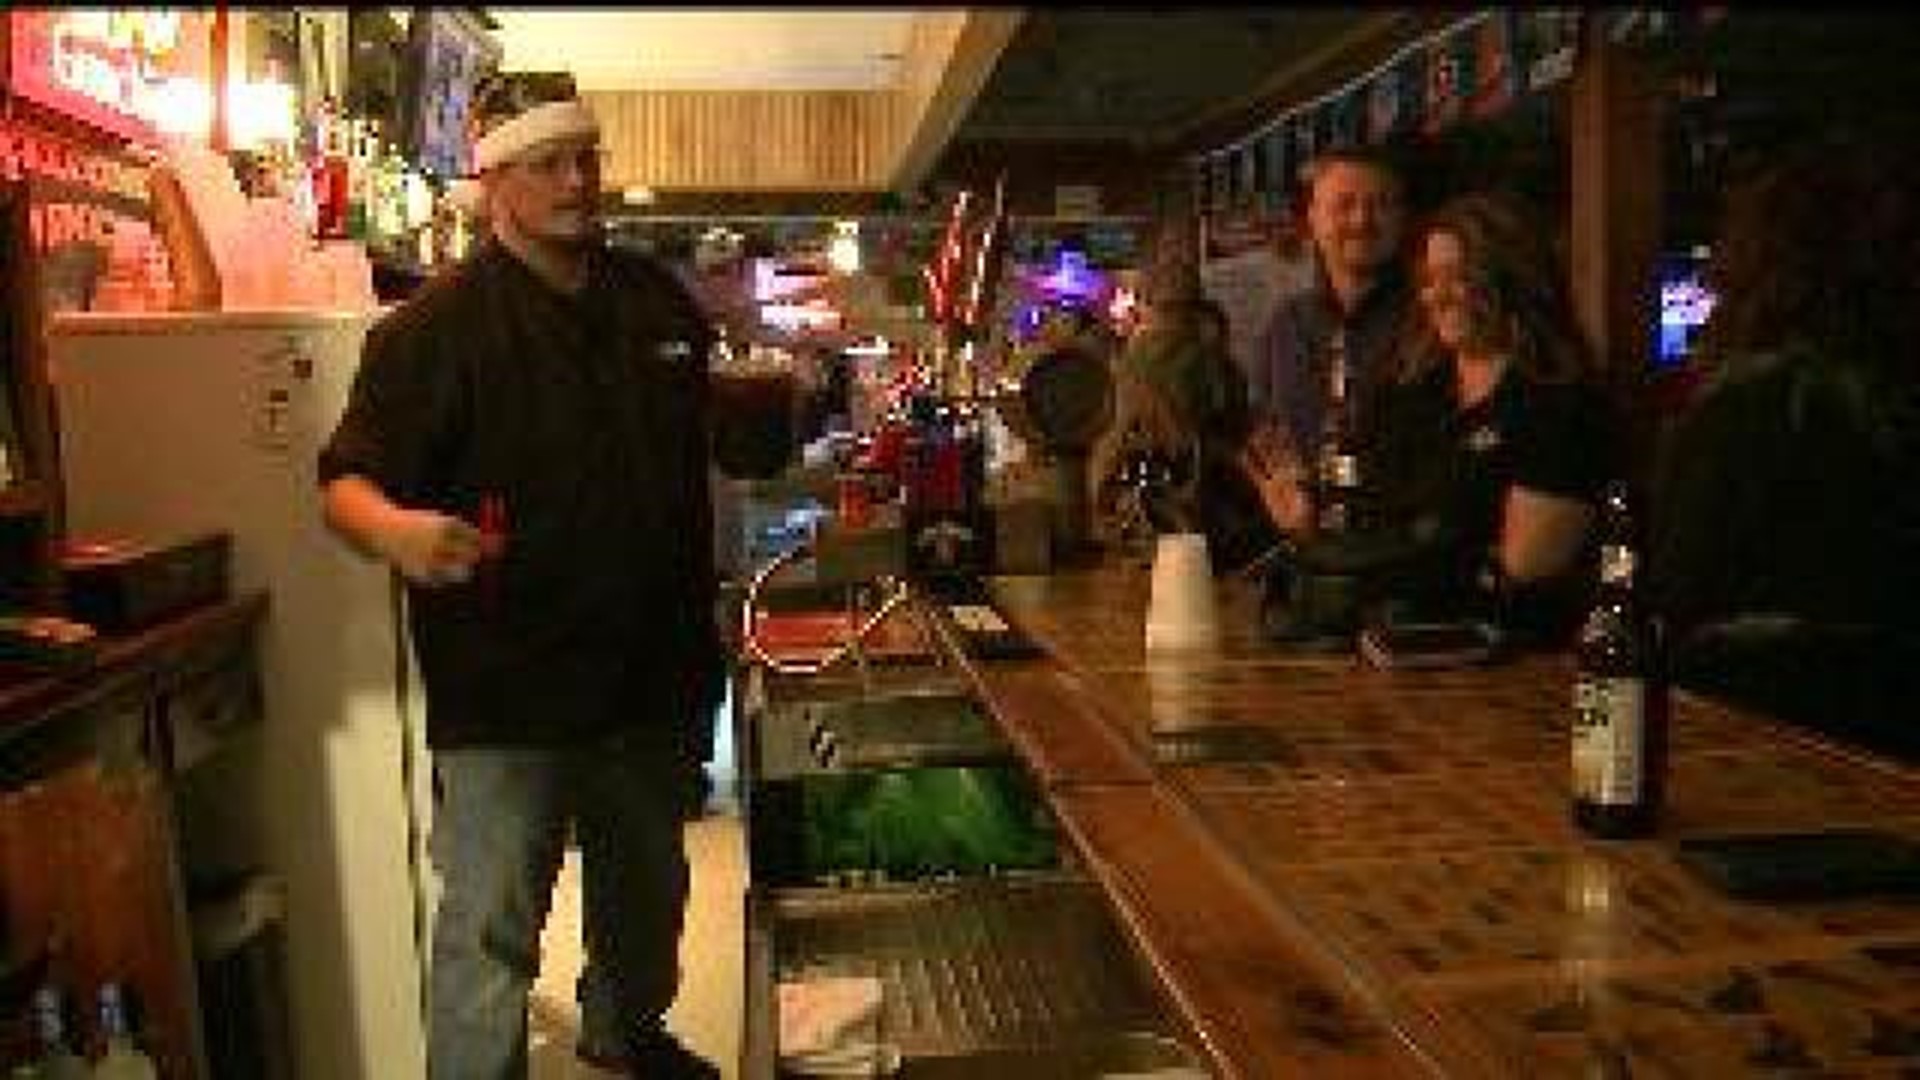 Davenport bar owner serves Christmas cheer